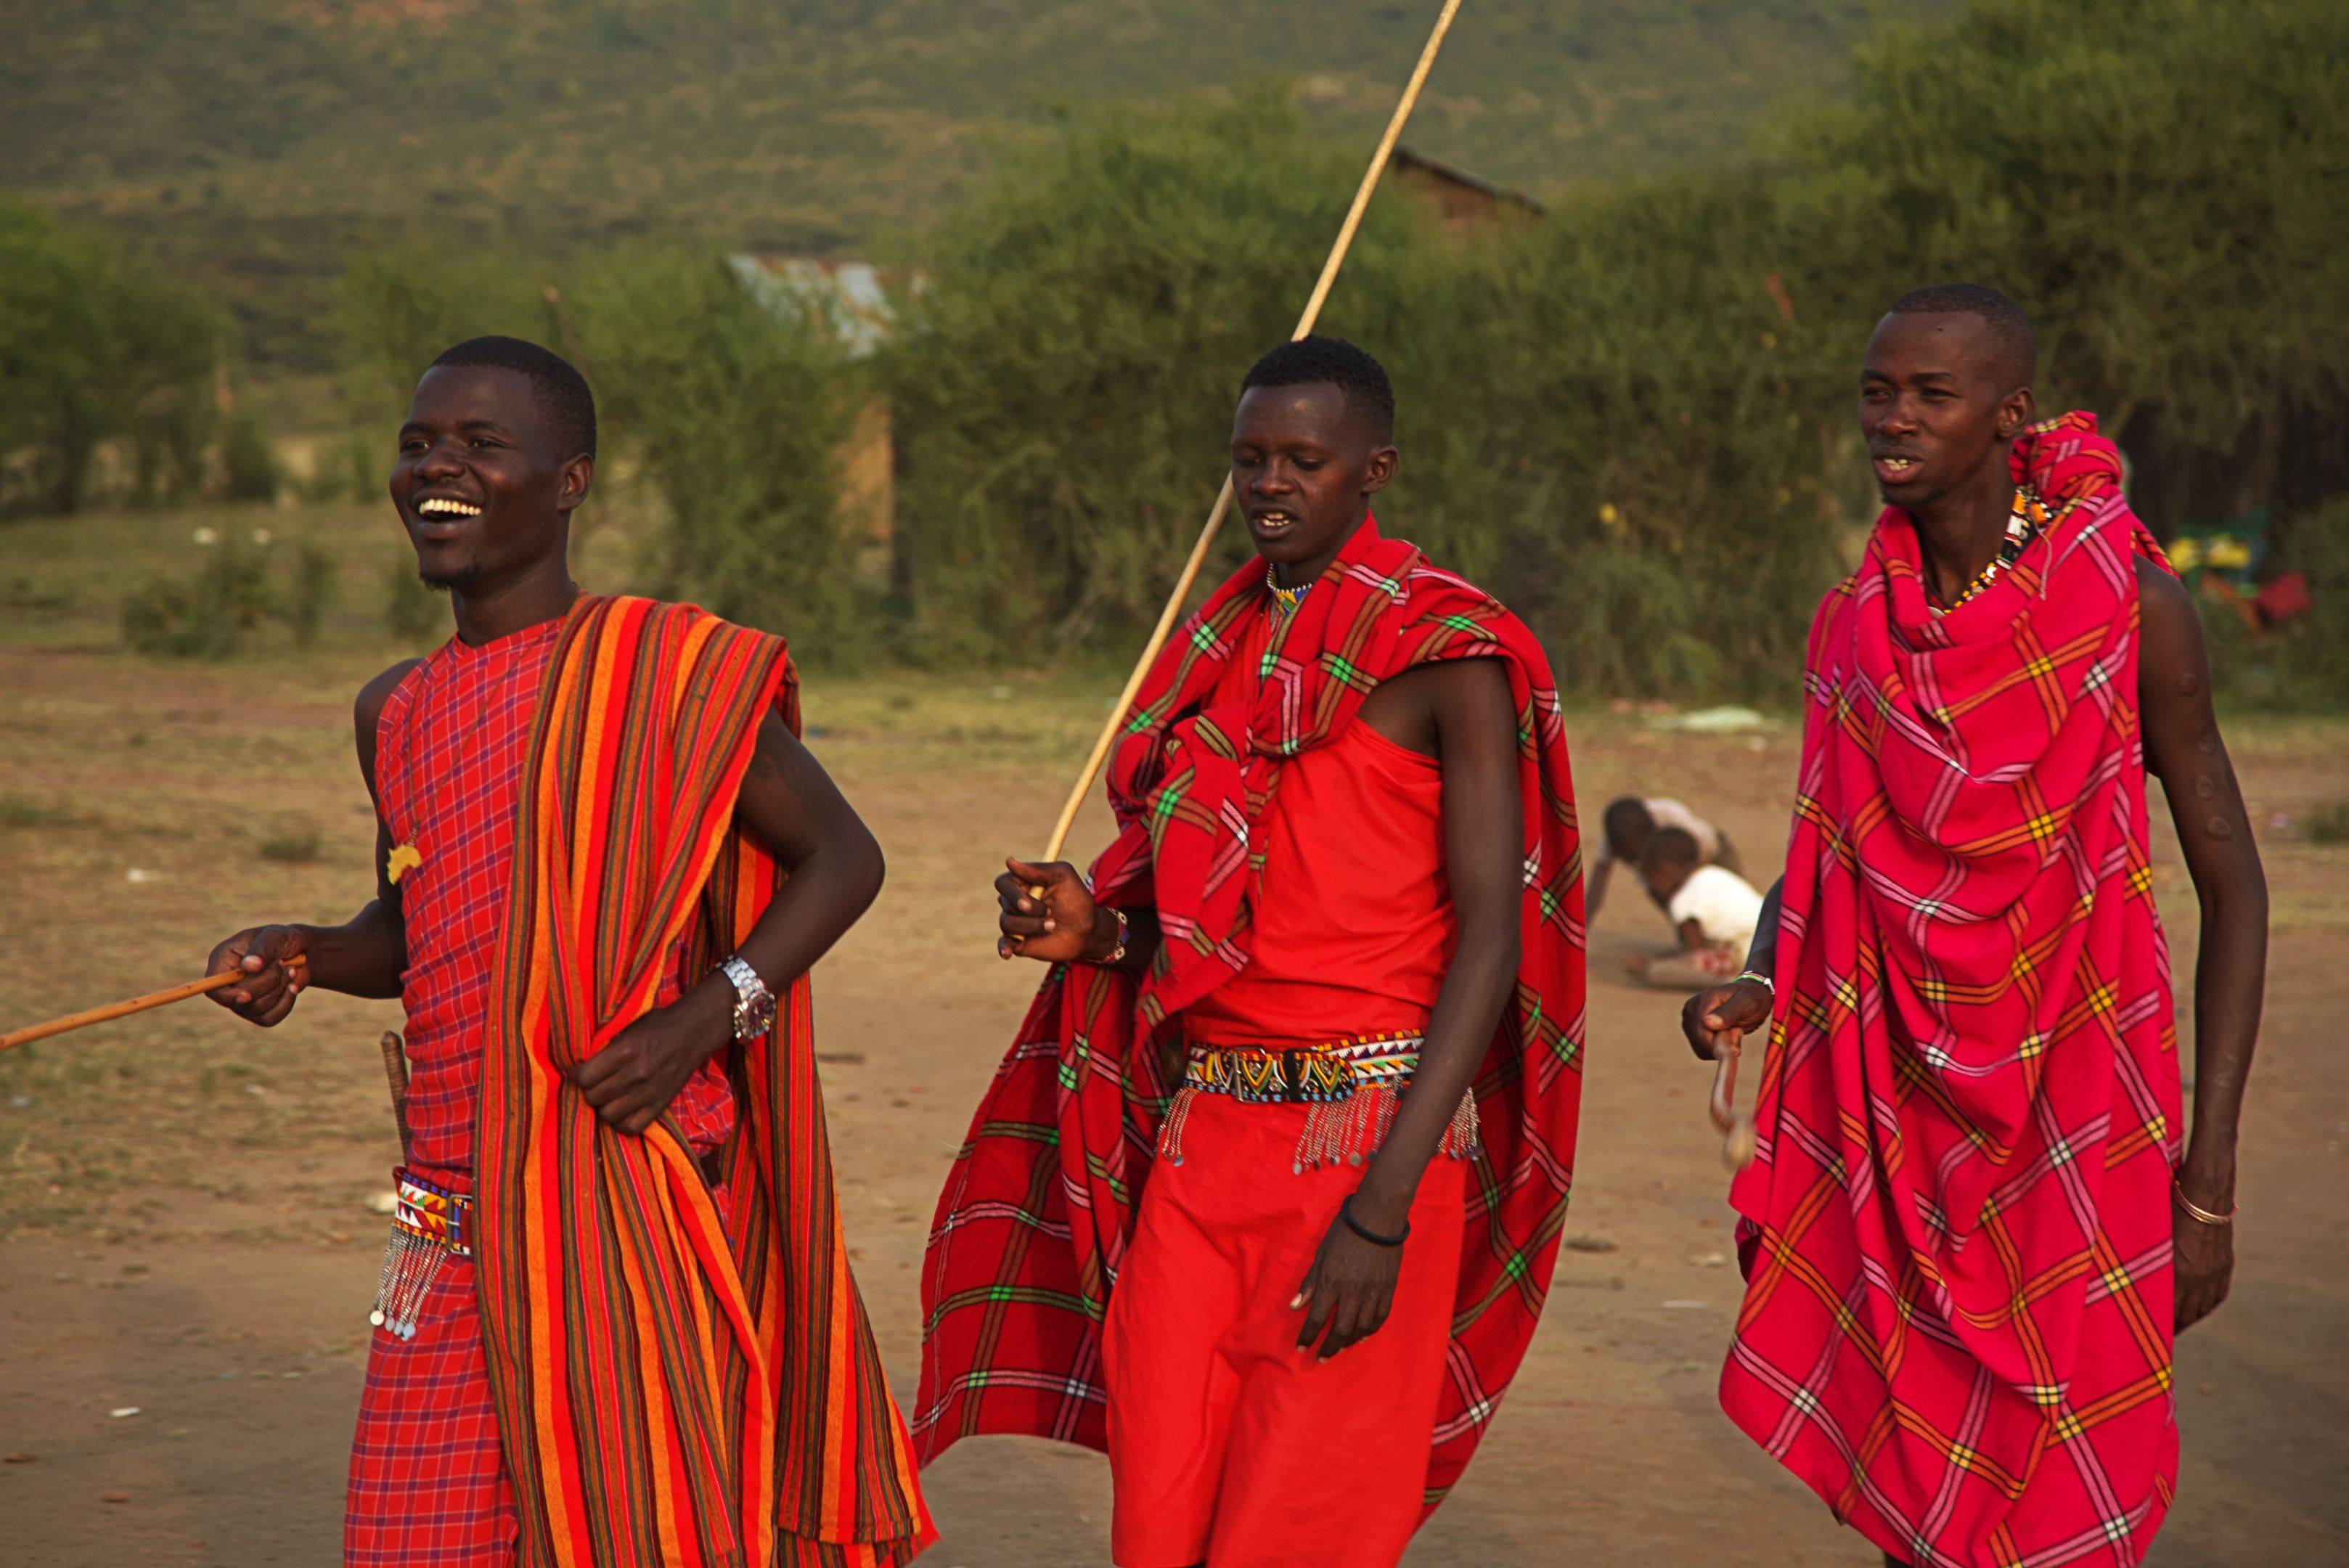 Willkommen im tierreichsten Gebiet von Afrika - der Masai Mara